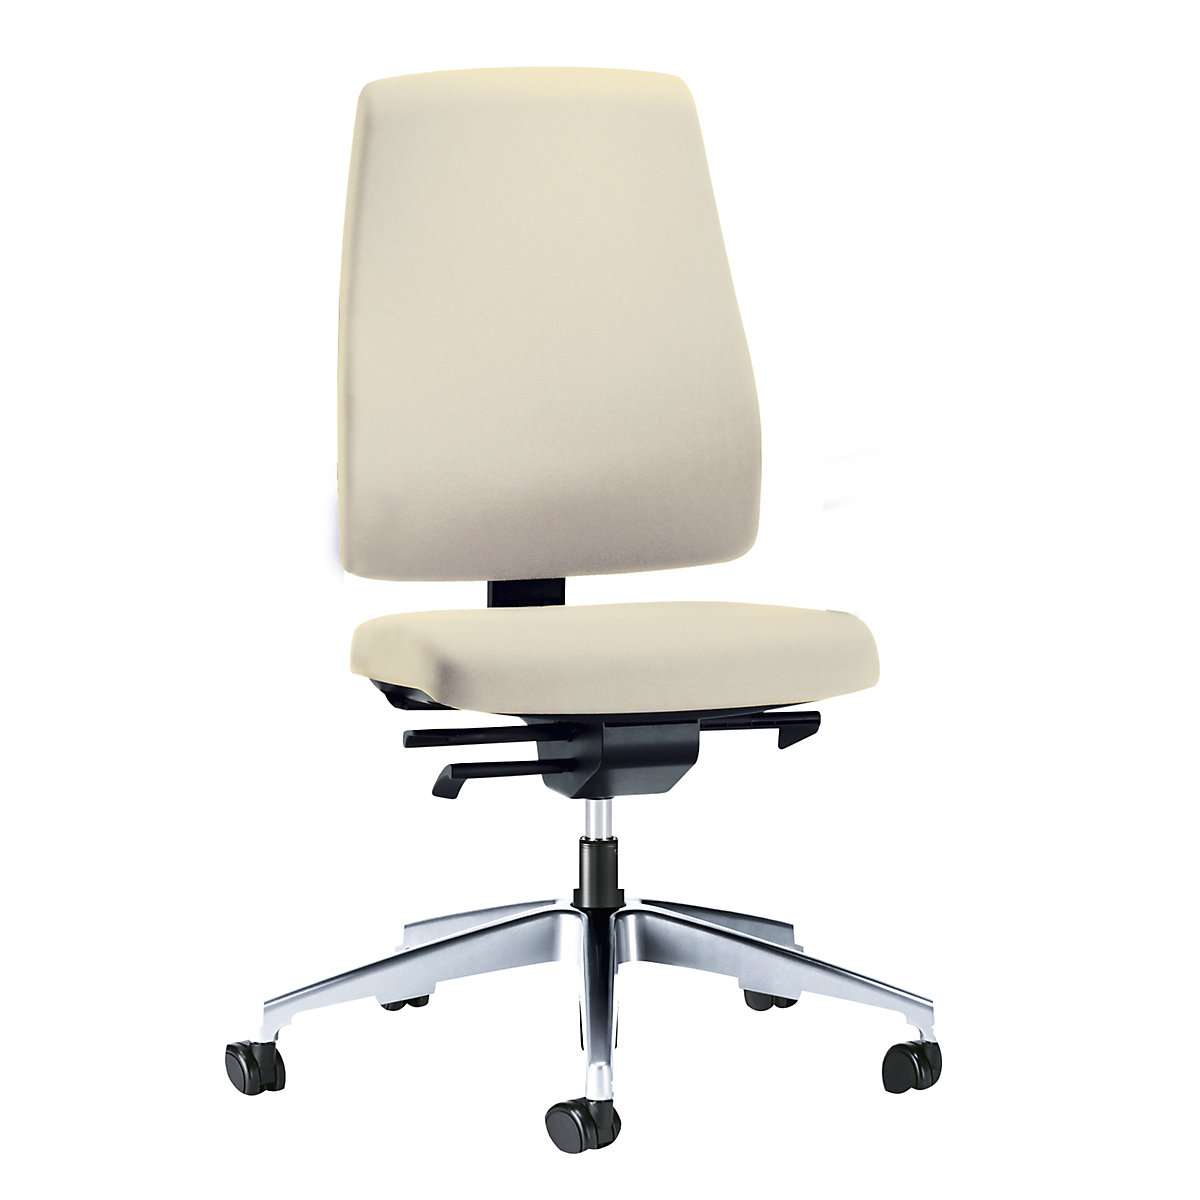 Sedia girevole per ufficio GOAL, altezza schienale 530 mm – interstuhl, telaio lucido, con rotelle morbide, beige, profondità sedile 410 – 460 mm-4